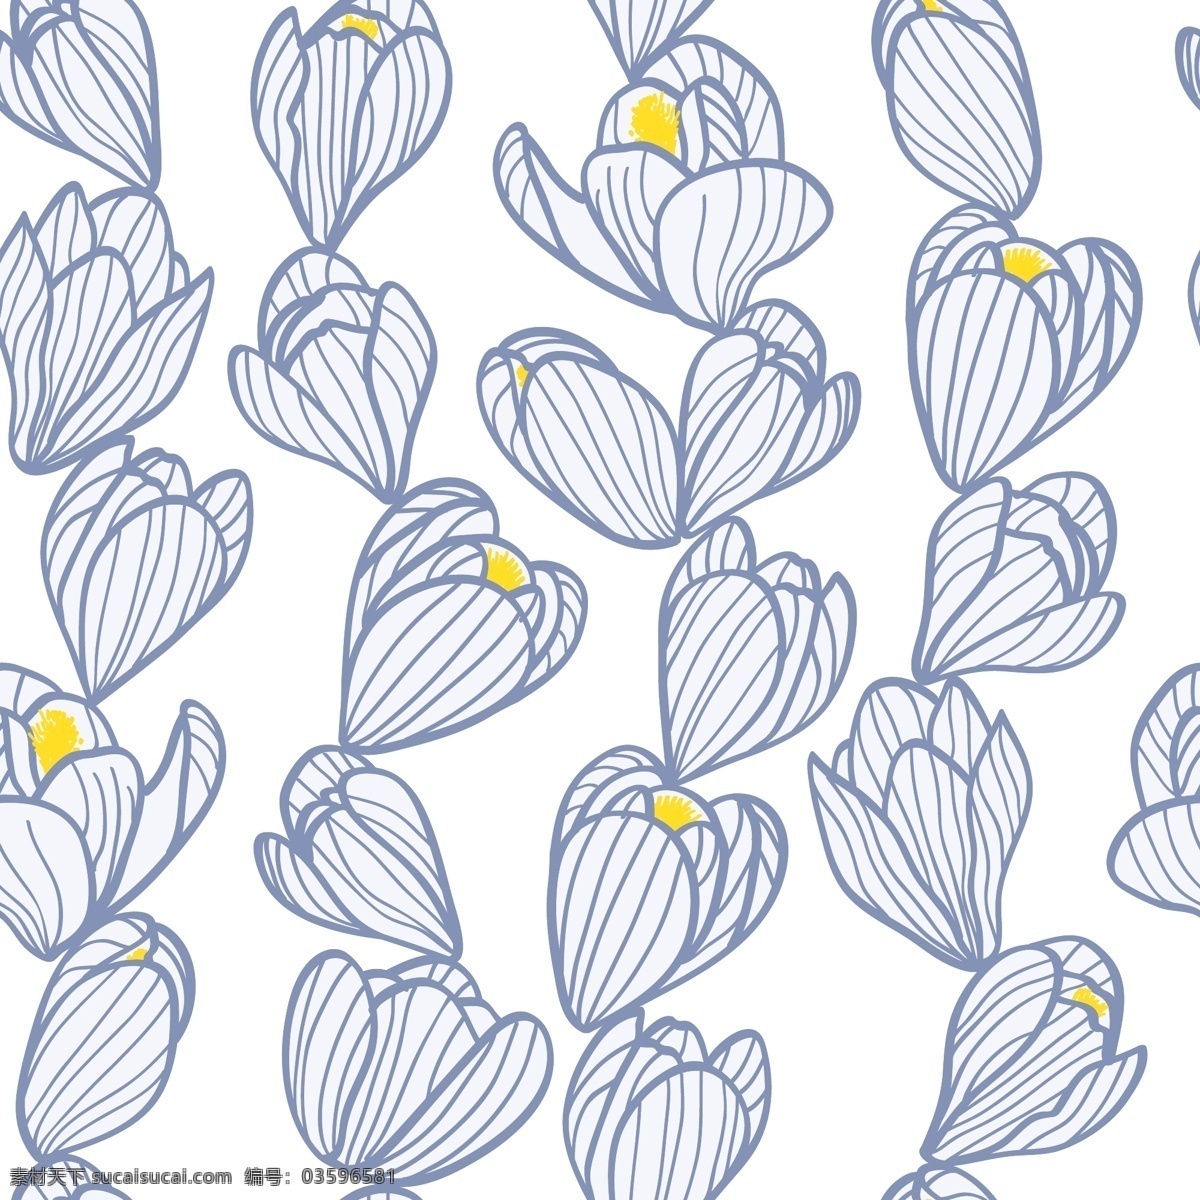 现代 清新 蓝色 花束 壁纸 图案 蓝色图案 线条画 黄色花蕊 壁纸图案 花朵壁纸